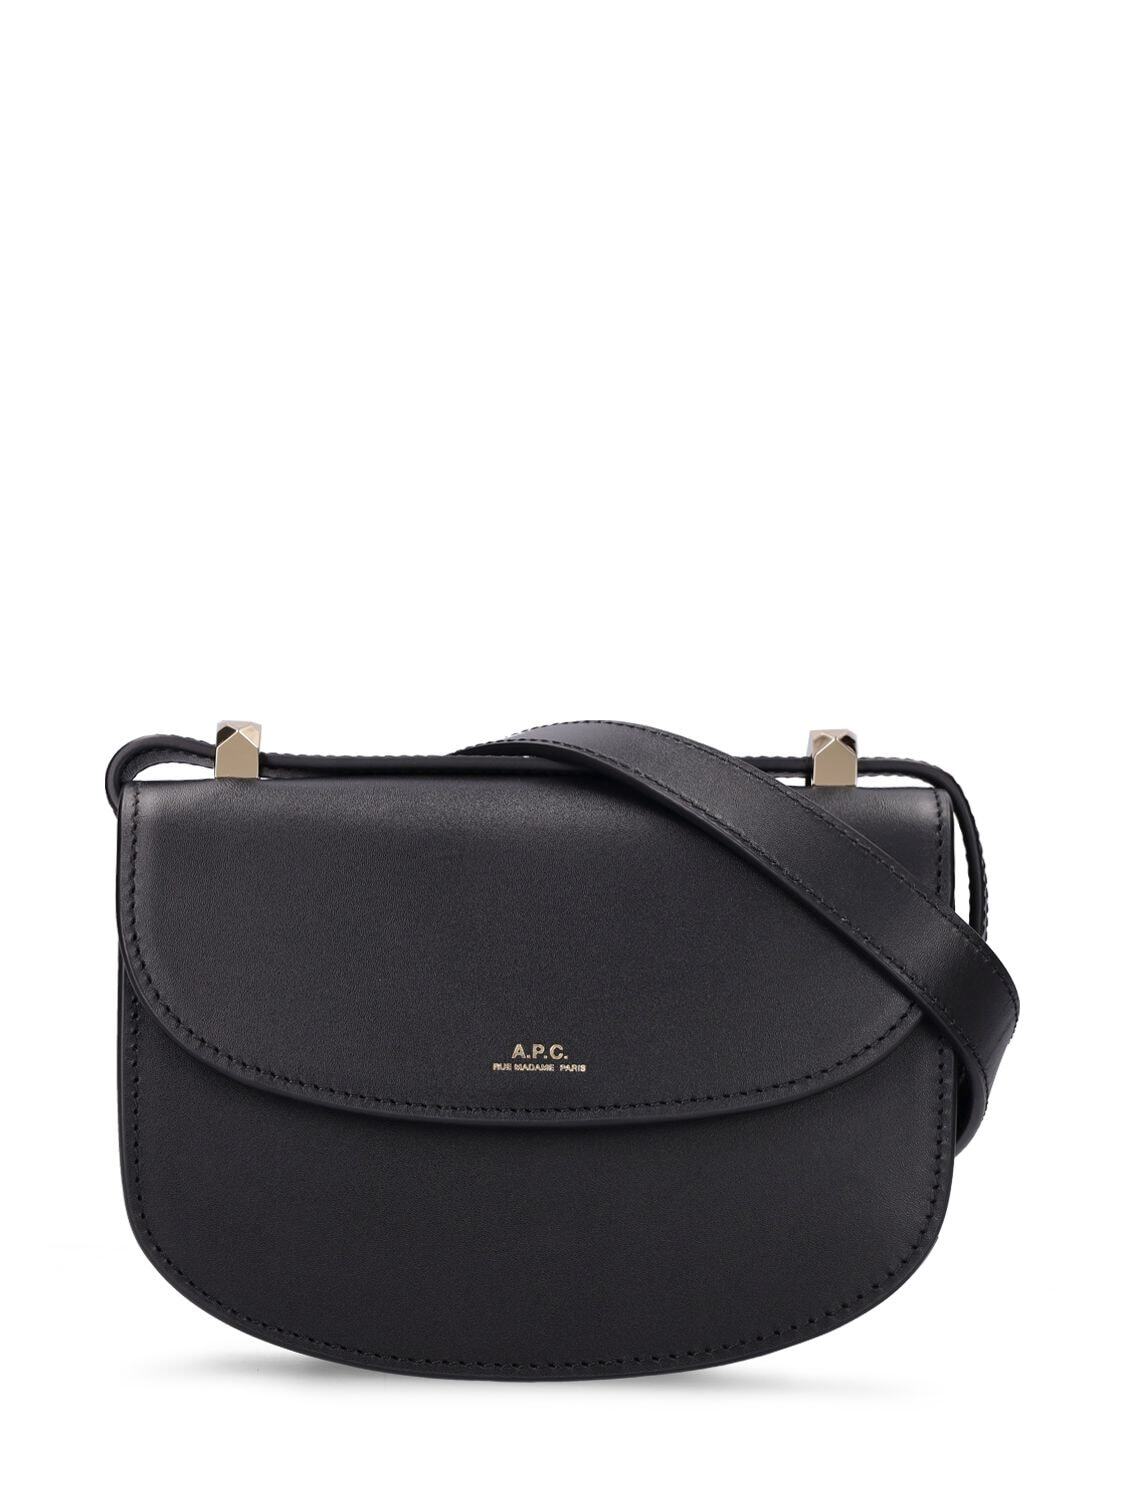 A.P.C. Mini Genève Leather Shoulder Bag in black